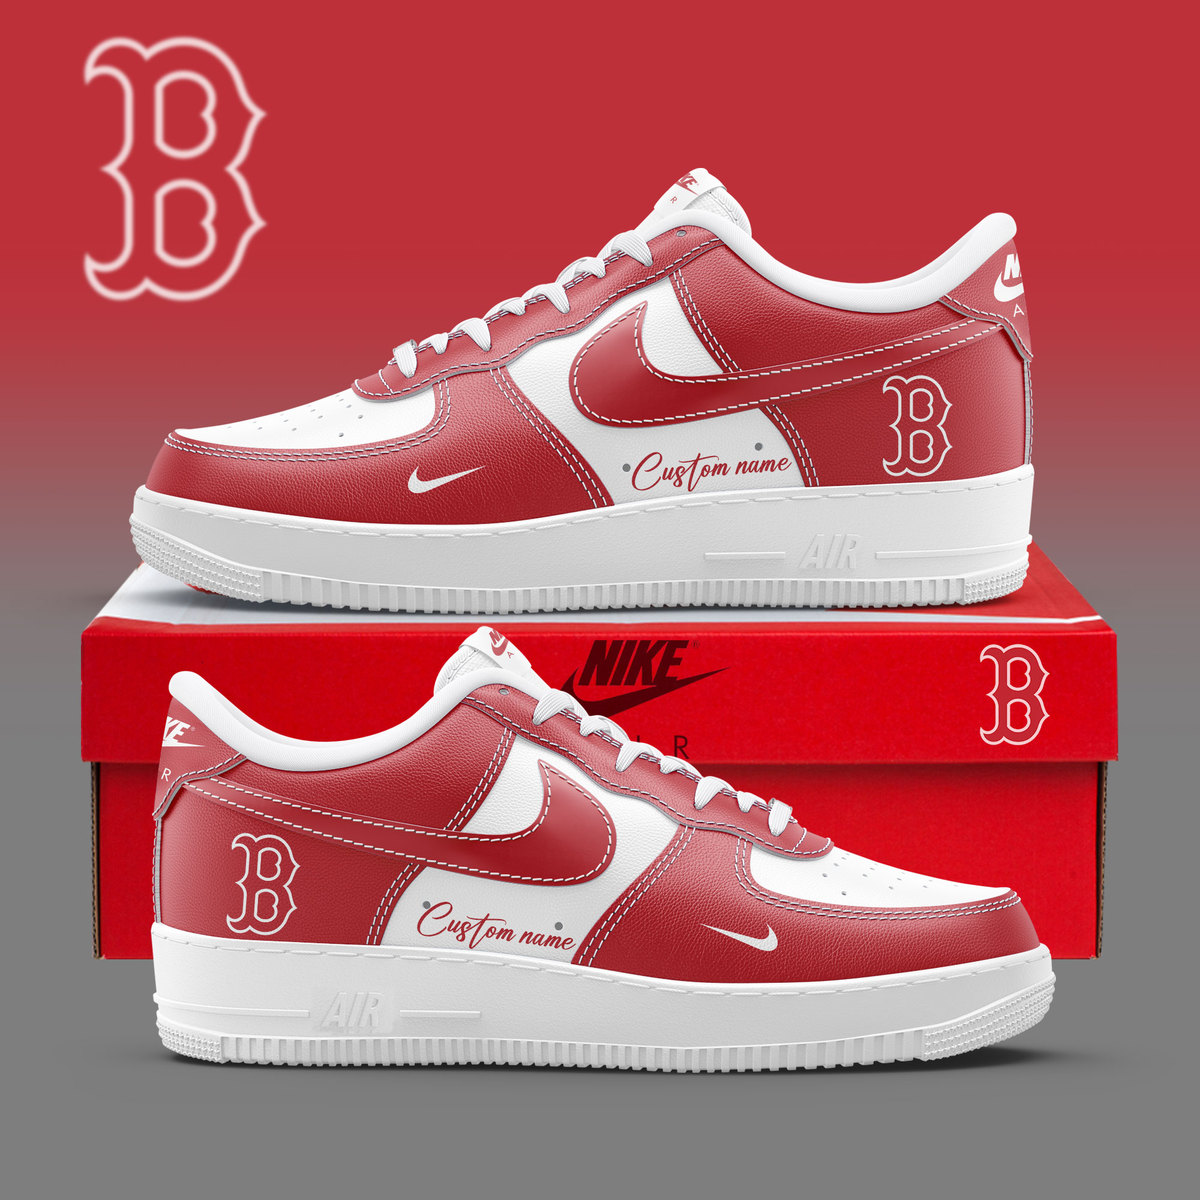 Boston Red Sox Custom Name Air Force 1 Sneaker